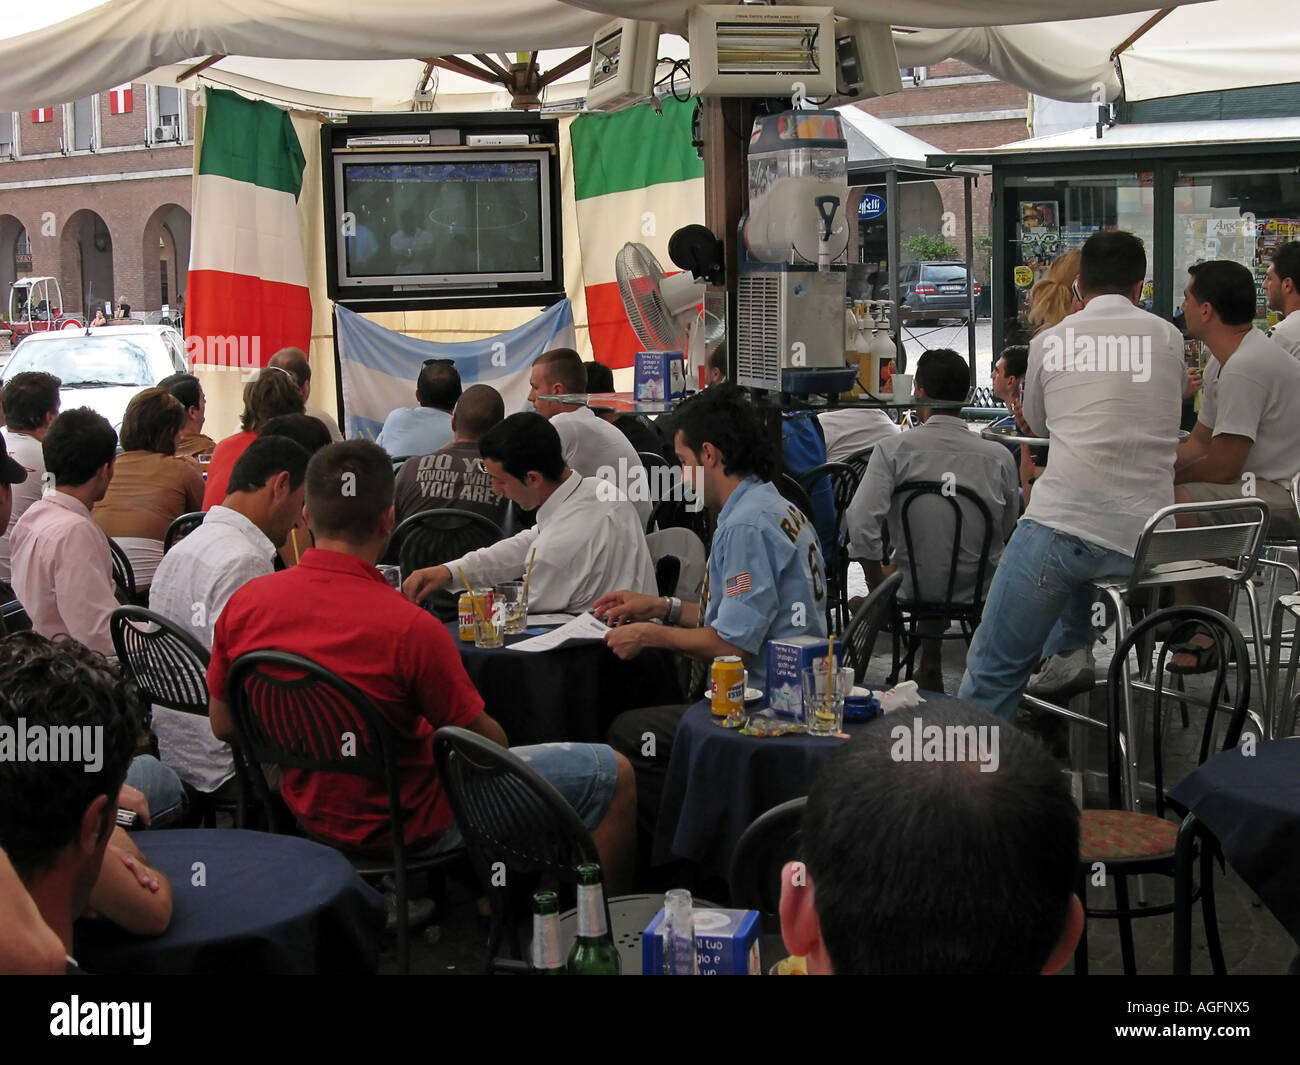 Les partisans italiens regardant un match de foot à l'extérieur d'un café pendant la worldcup Banque D'Images